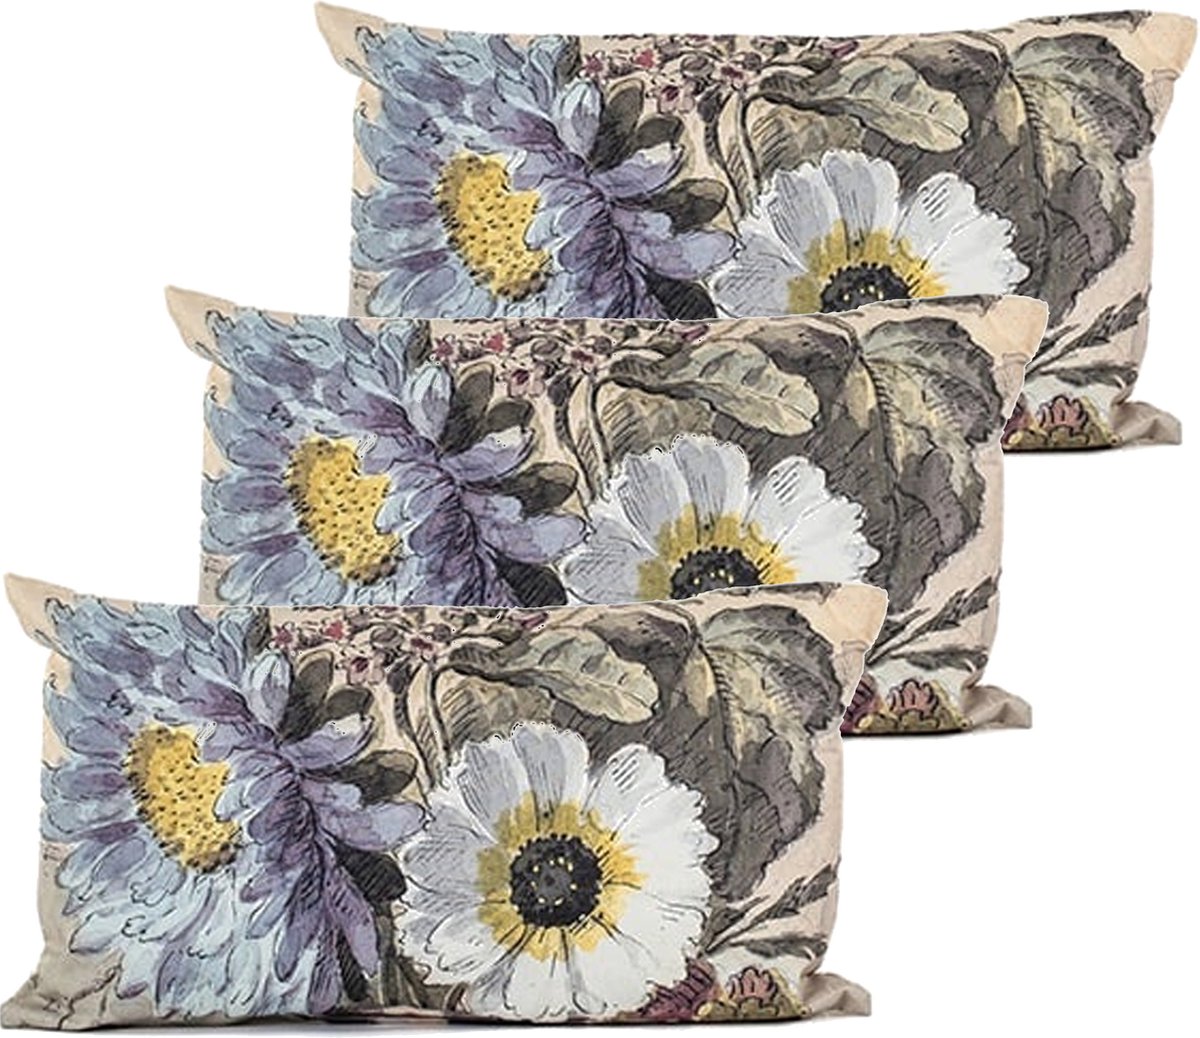 Anna's collection buitenkussen bloem - 3x - Creme/wit - 30 x 50 cm - Water en UV bestendig